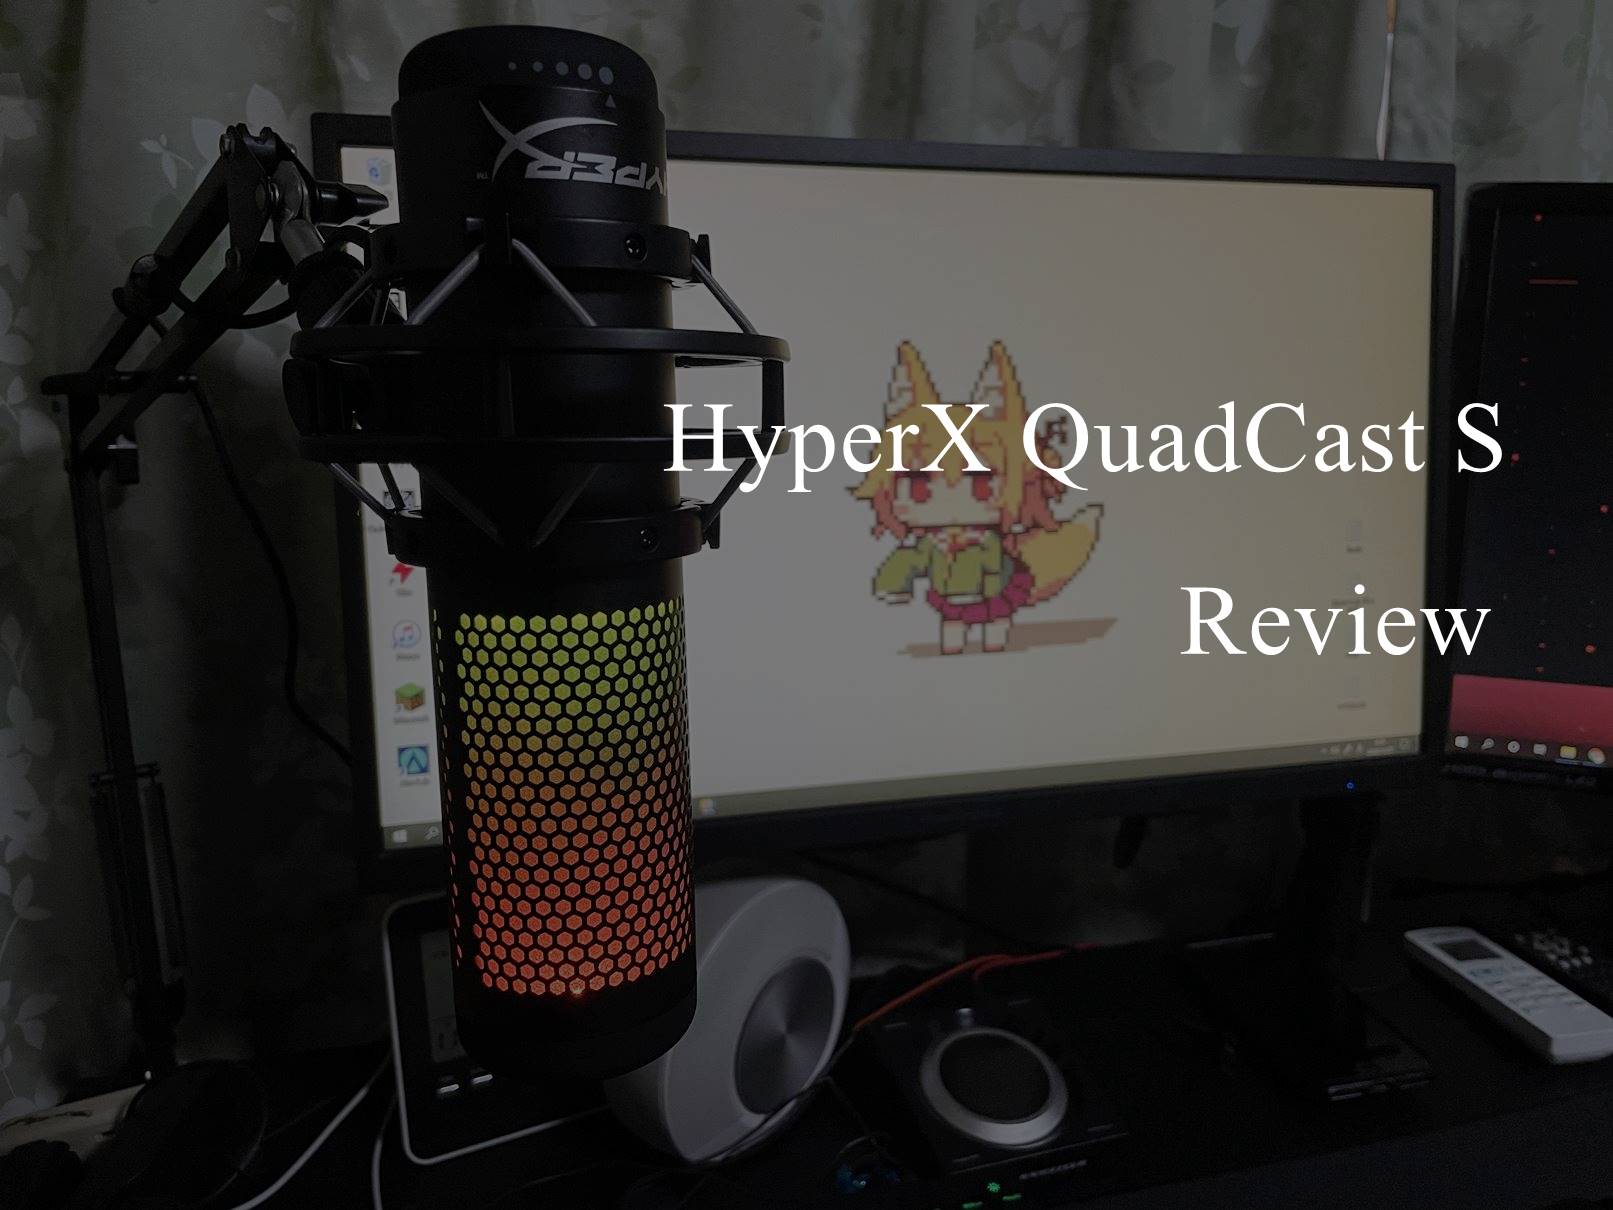 HyperX QuadCast Sレビュー:ゲーミングハイエンドマイクの性能を見て 